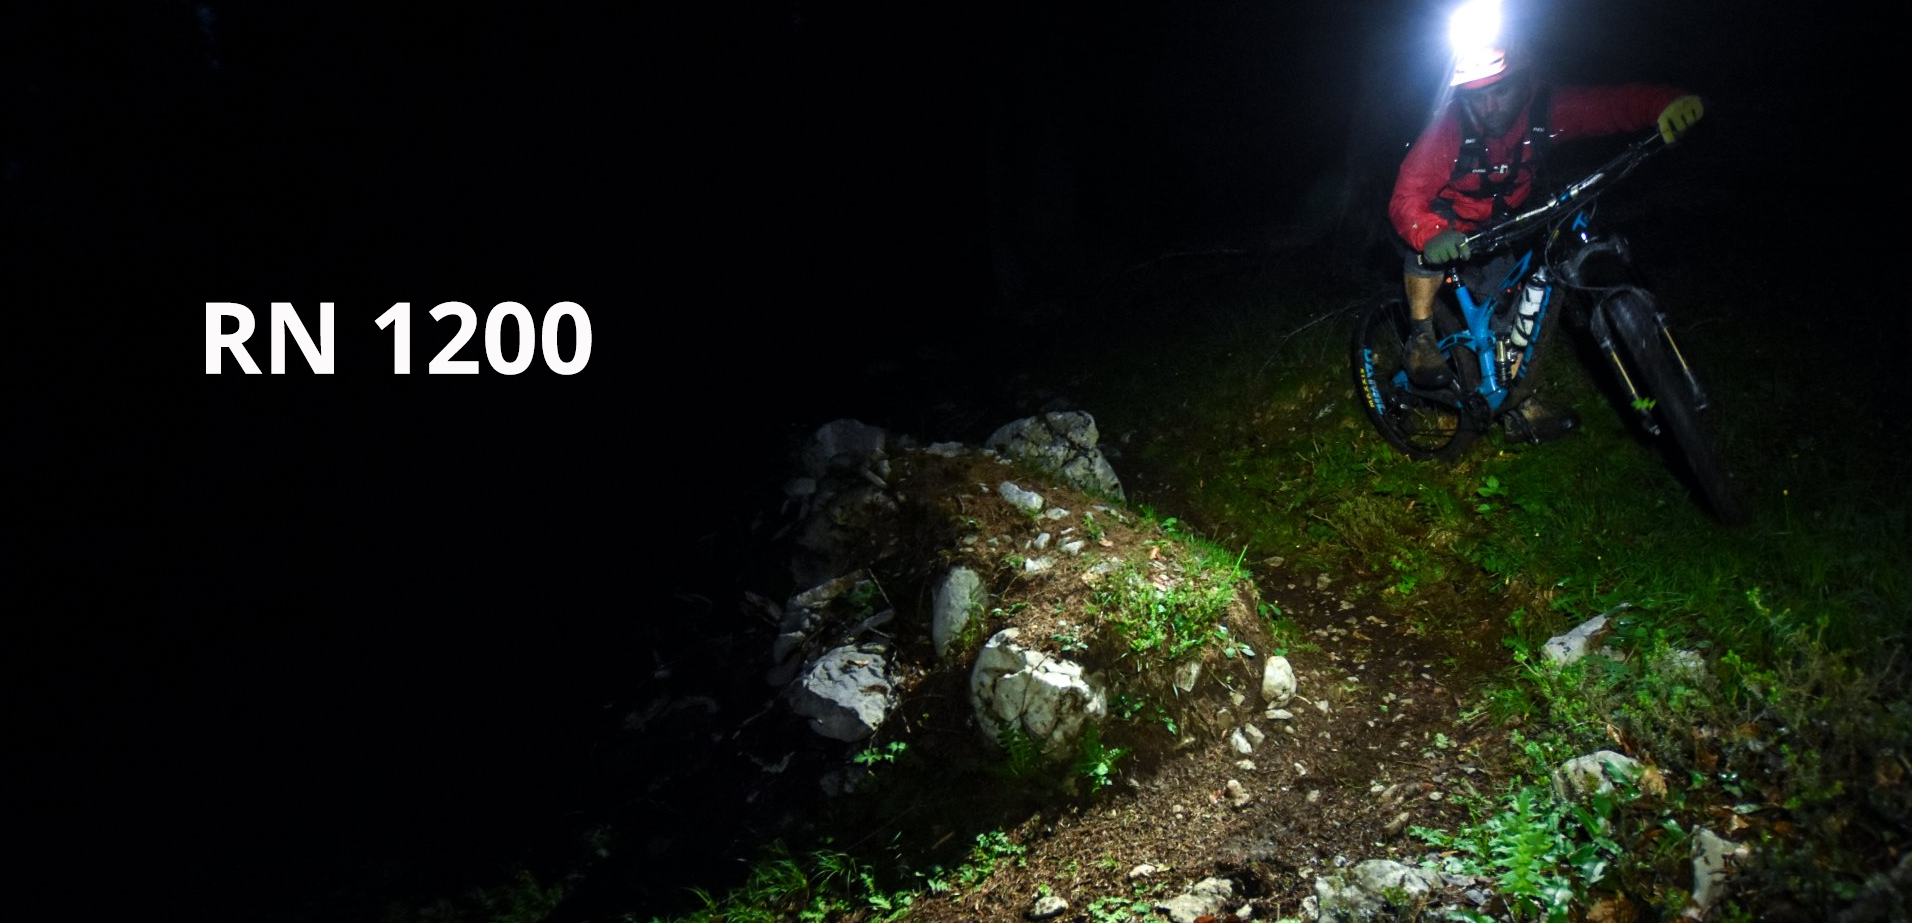 Magicshine starke LED Helmlampe RN 1200 im Wald von einem Fahrer als Bike Light getestet